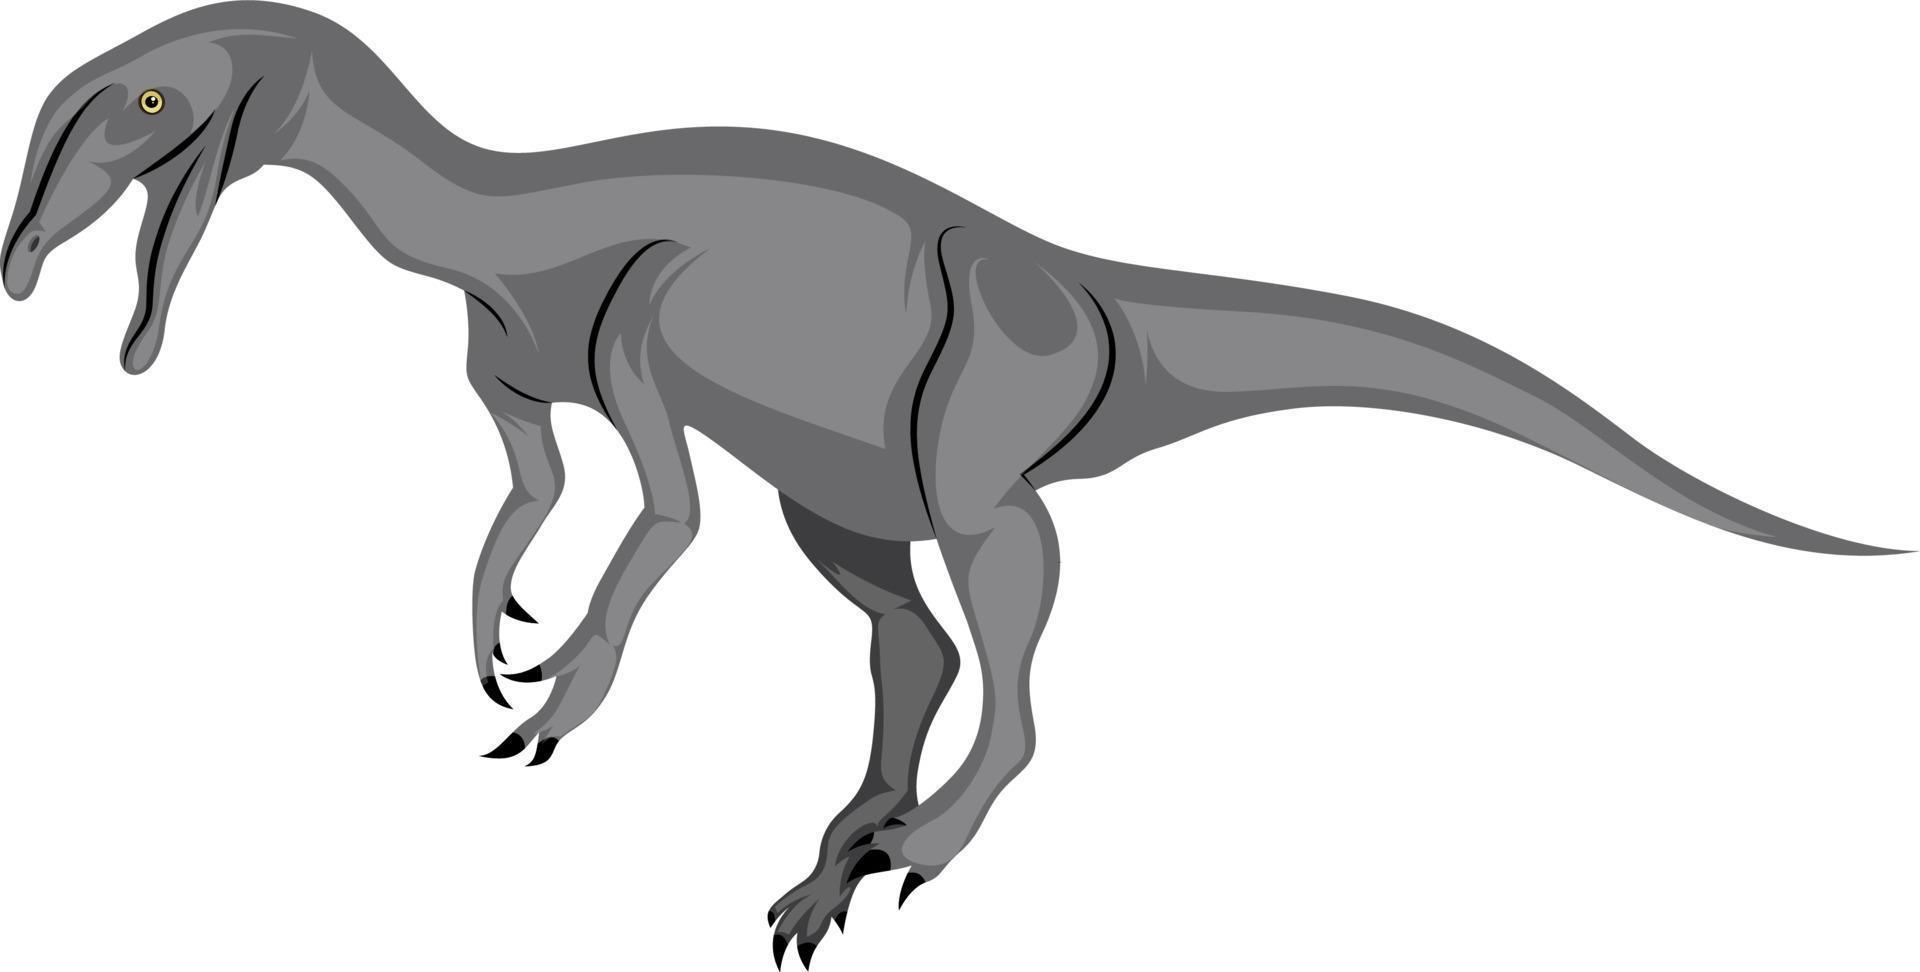 Dinosaure laid, illustration, vecteur sur fond blanc.